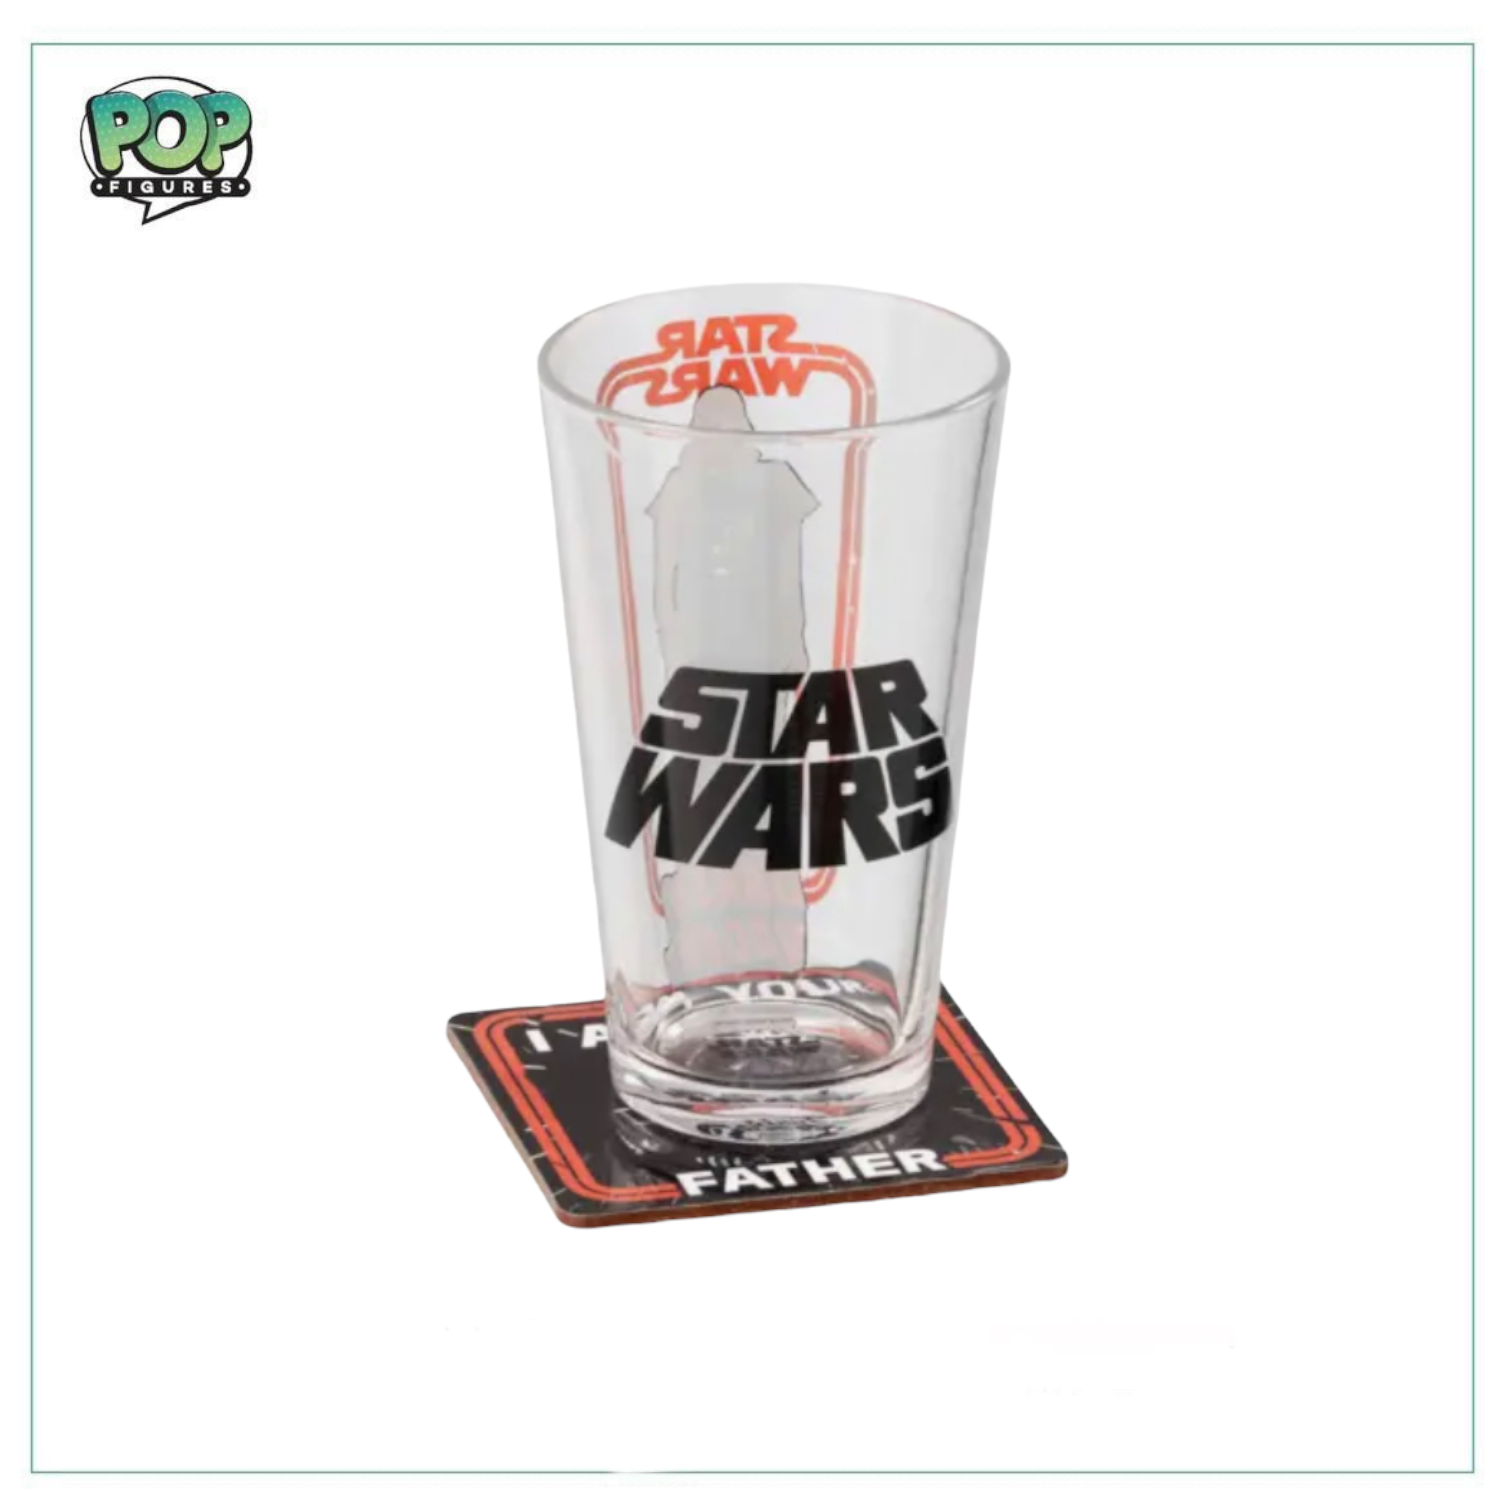 Star Wars Pint Glass and Coaster Set! Star Wars - Darth Vader